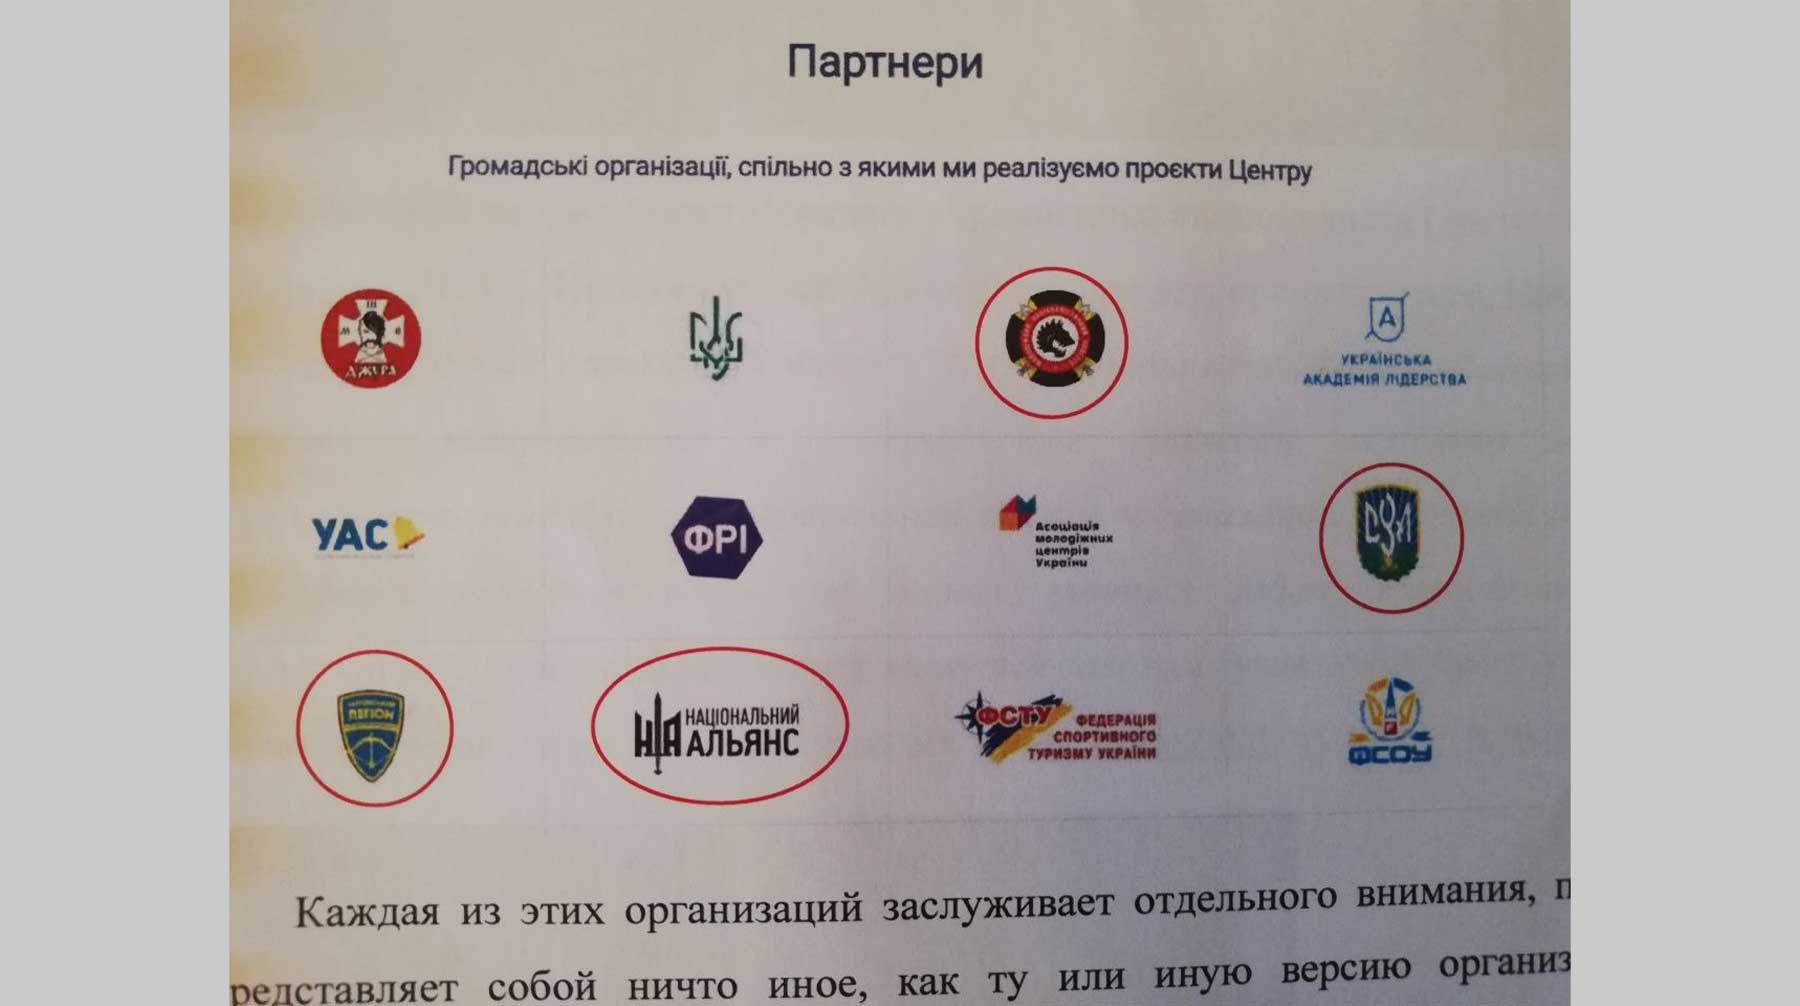 Партнерские организации Украинского государственного центра национально-патриотического воспитания